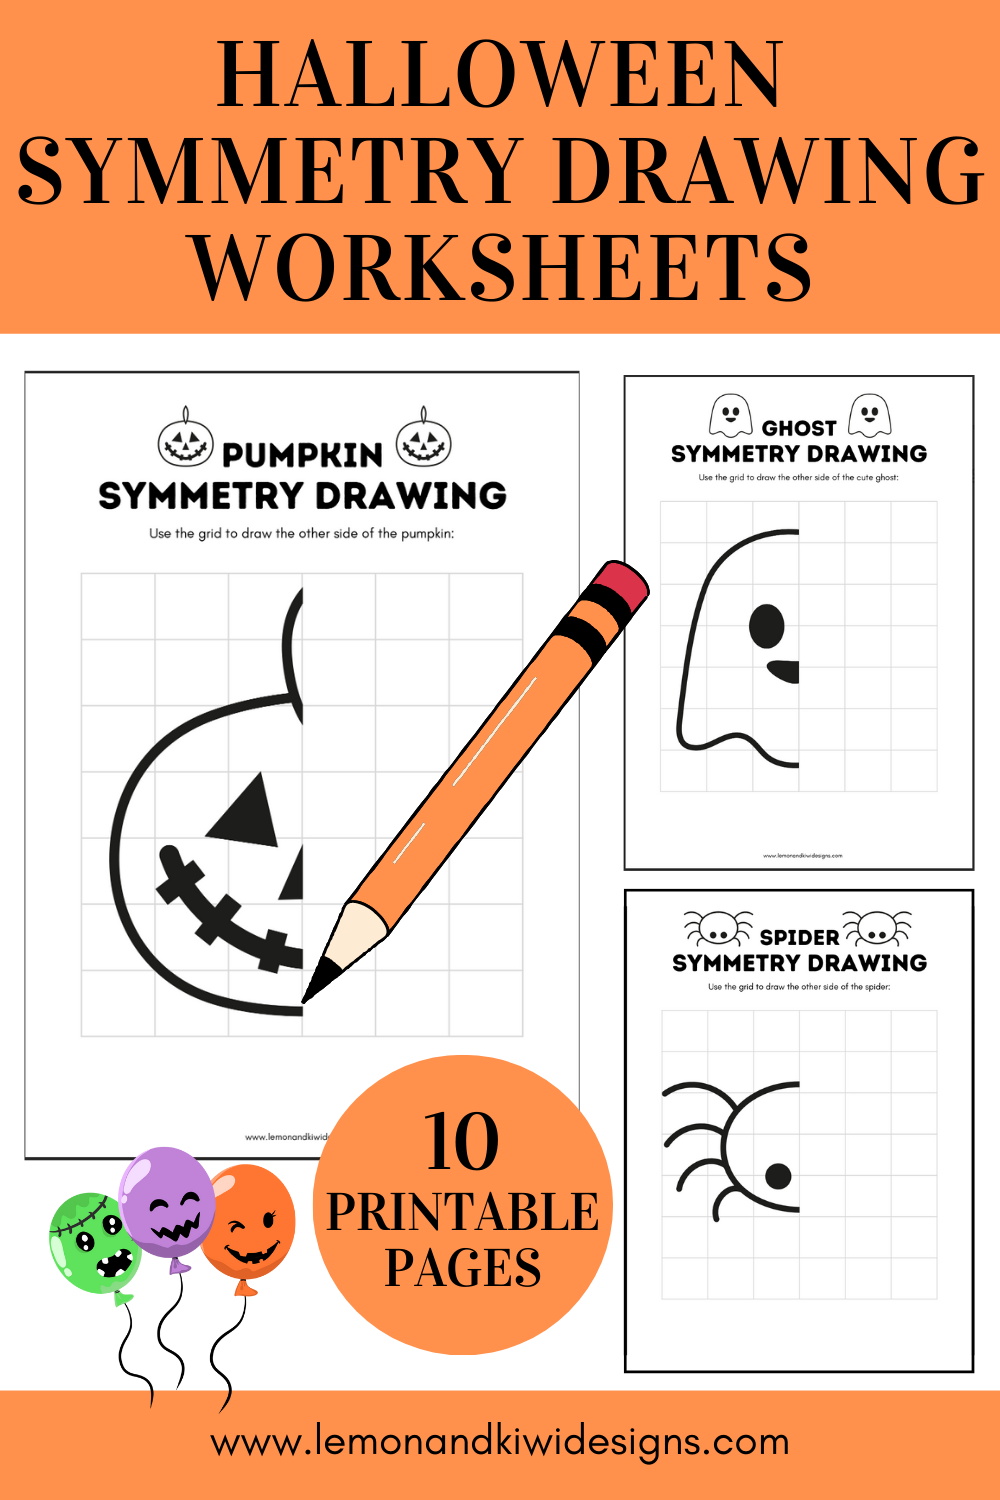 Printable Halloween Symmetry Drawing Worksheets